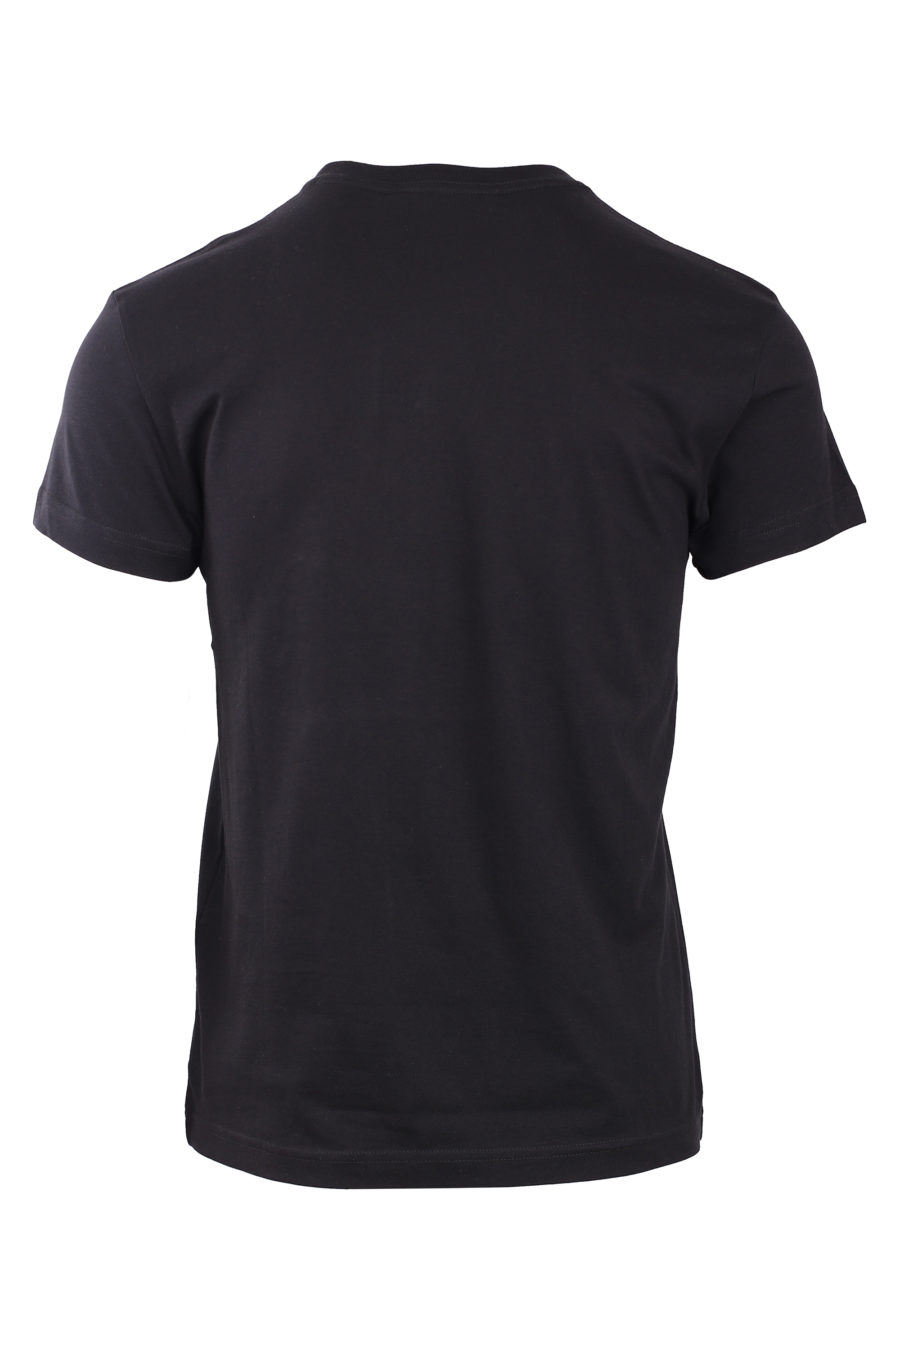 Schwarzes T-Shirt mit rundem, schillerndem Logo - IMG 0776